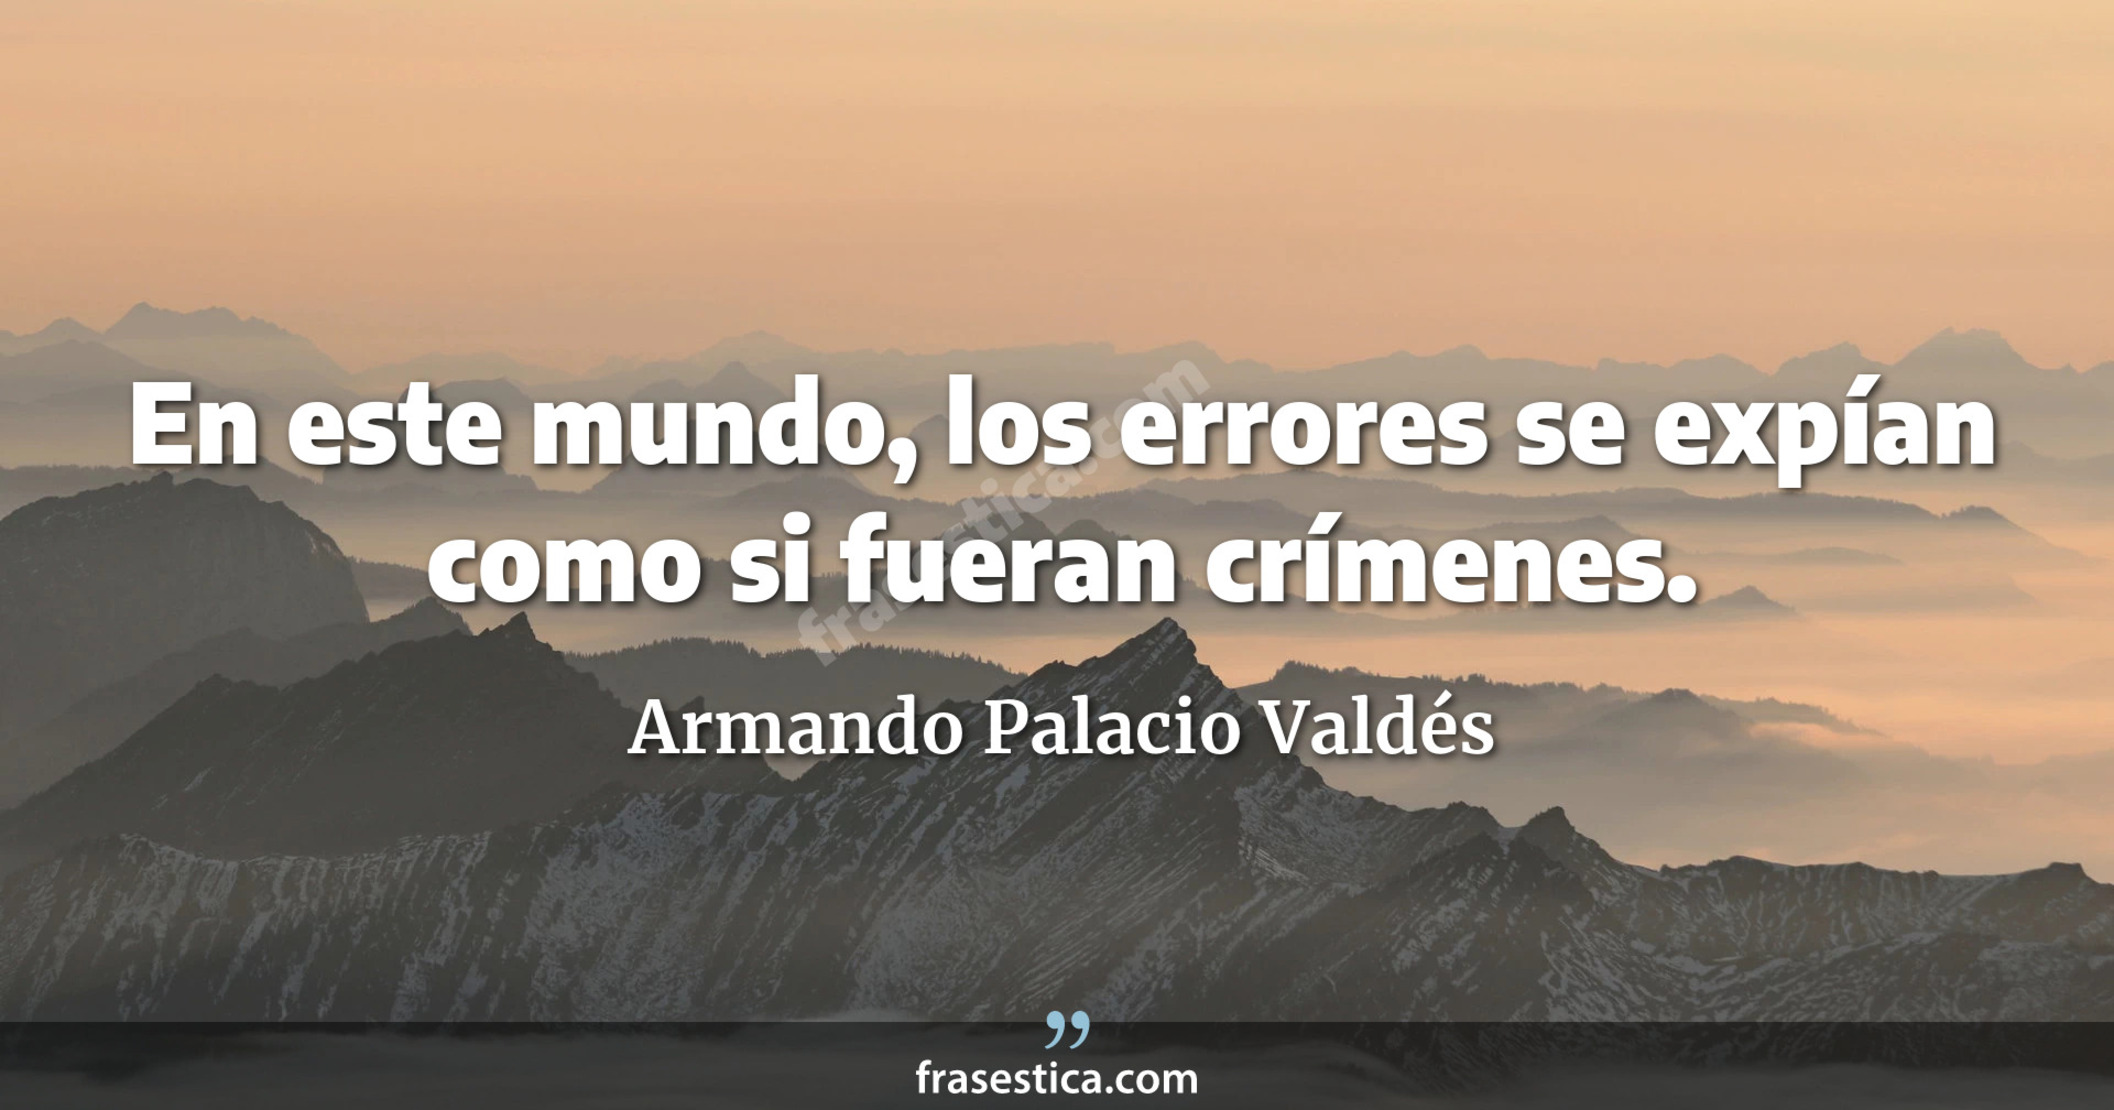 En este mundo, los errores se expían como si fueran crímenes. - Armando Palacio Valdés